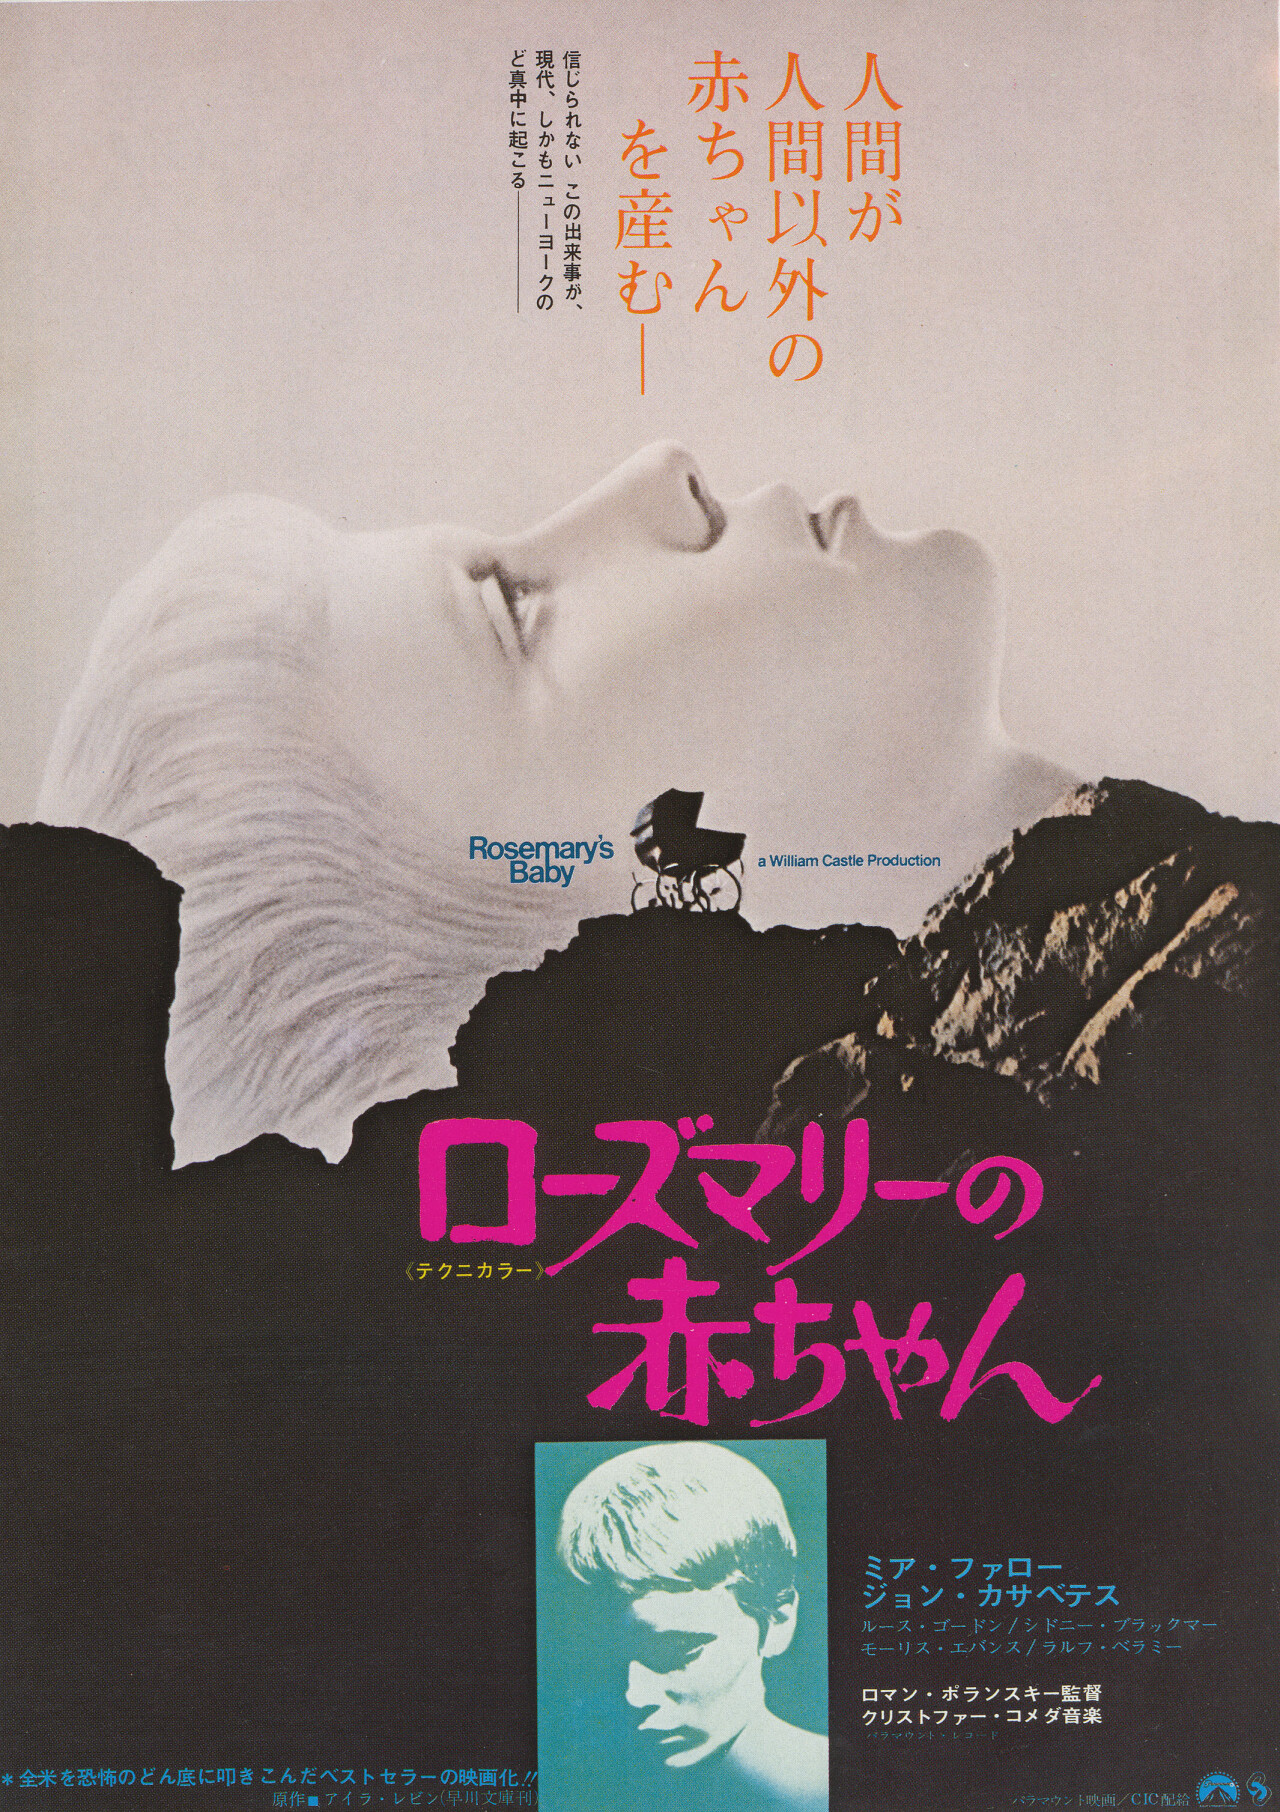 Ребенок Розмари (Rosemarys Baby, 1968), режиссёр Роман Полански, японский постер к фильму (ужасы, 1970 год)